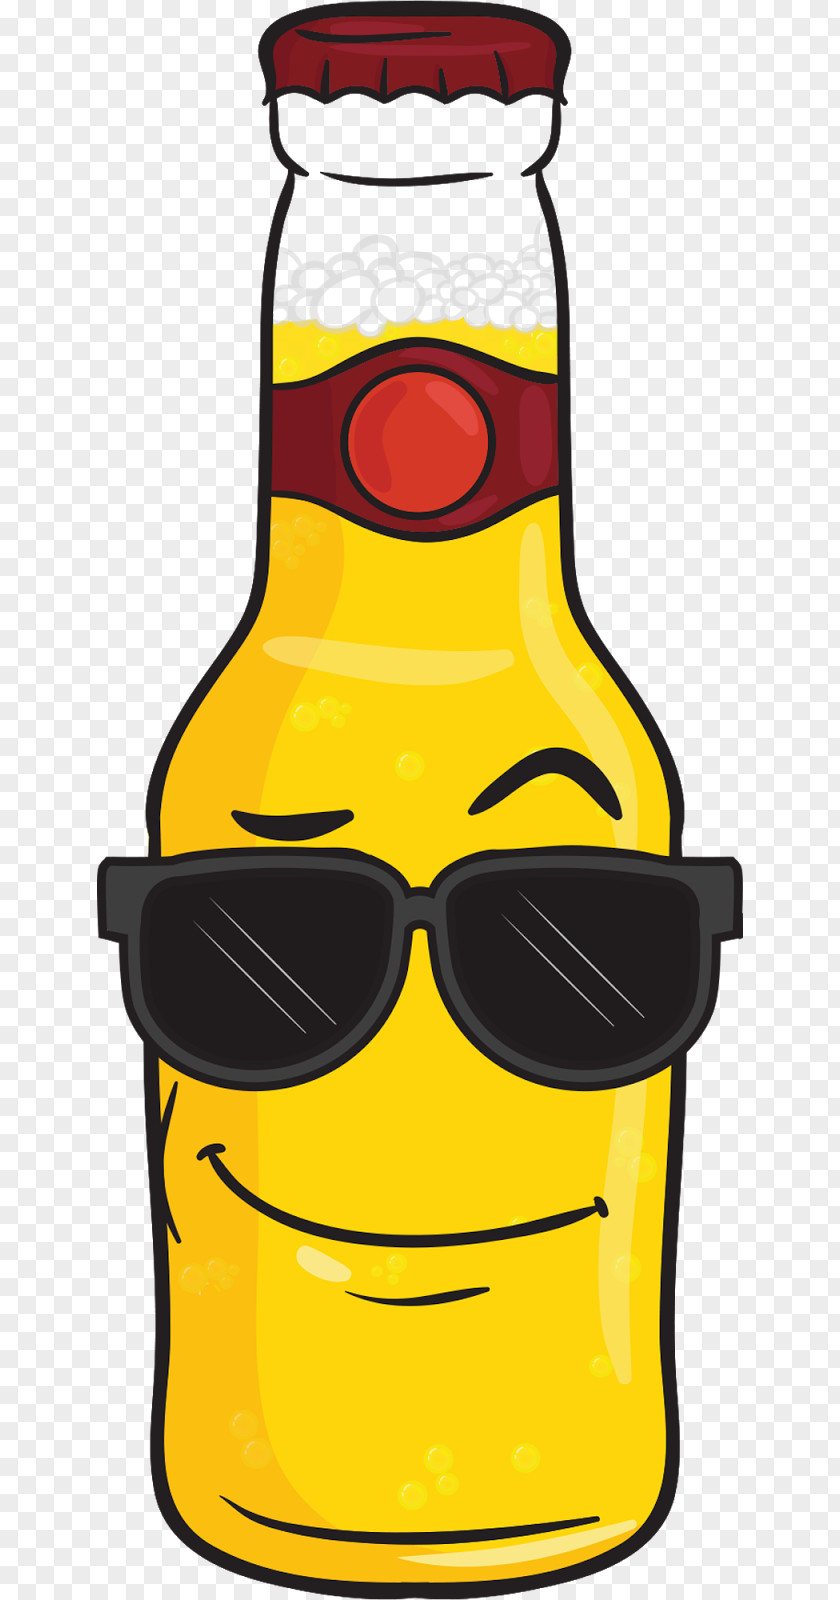 Sunglasses Emoji Beer Bottle Alcoholic Drink Malt Liquor PNG